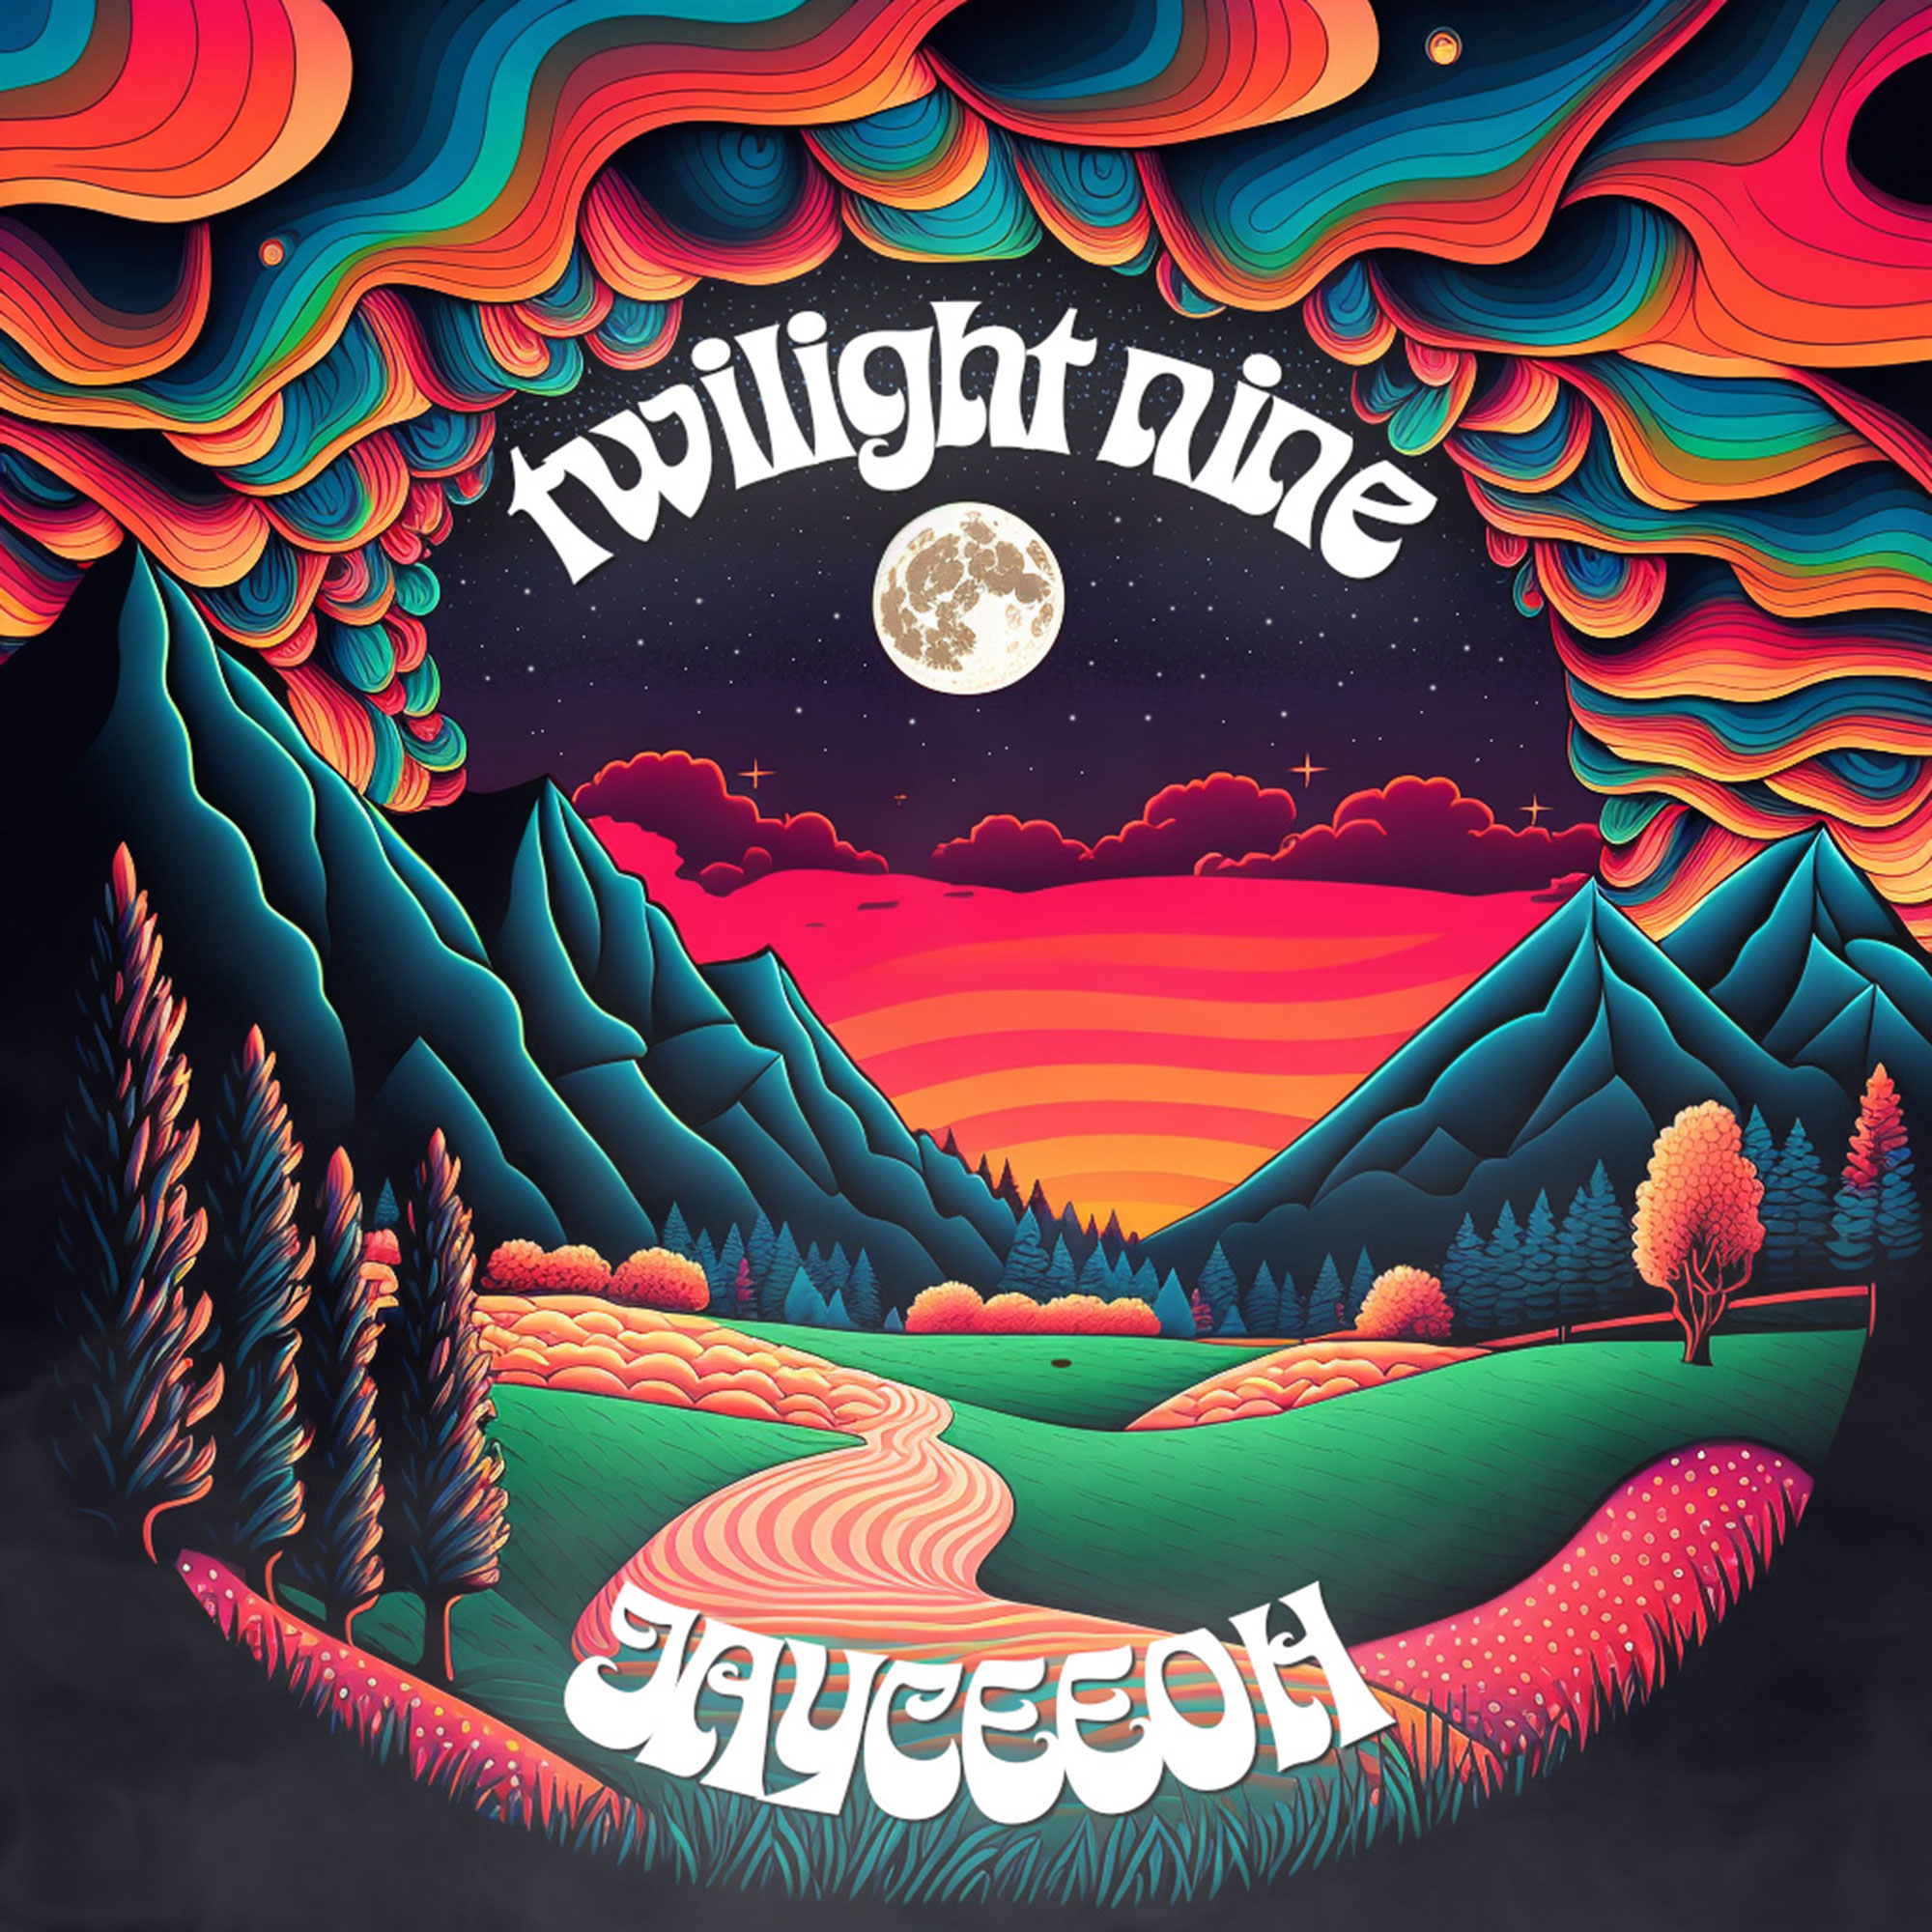  Escucha “twilight nine”, el más reciente álbum de Jayceeoh